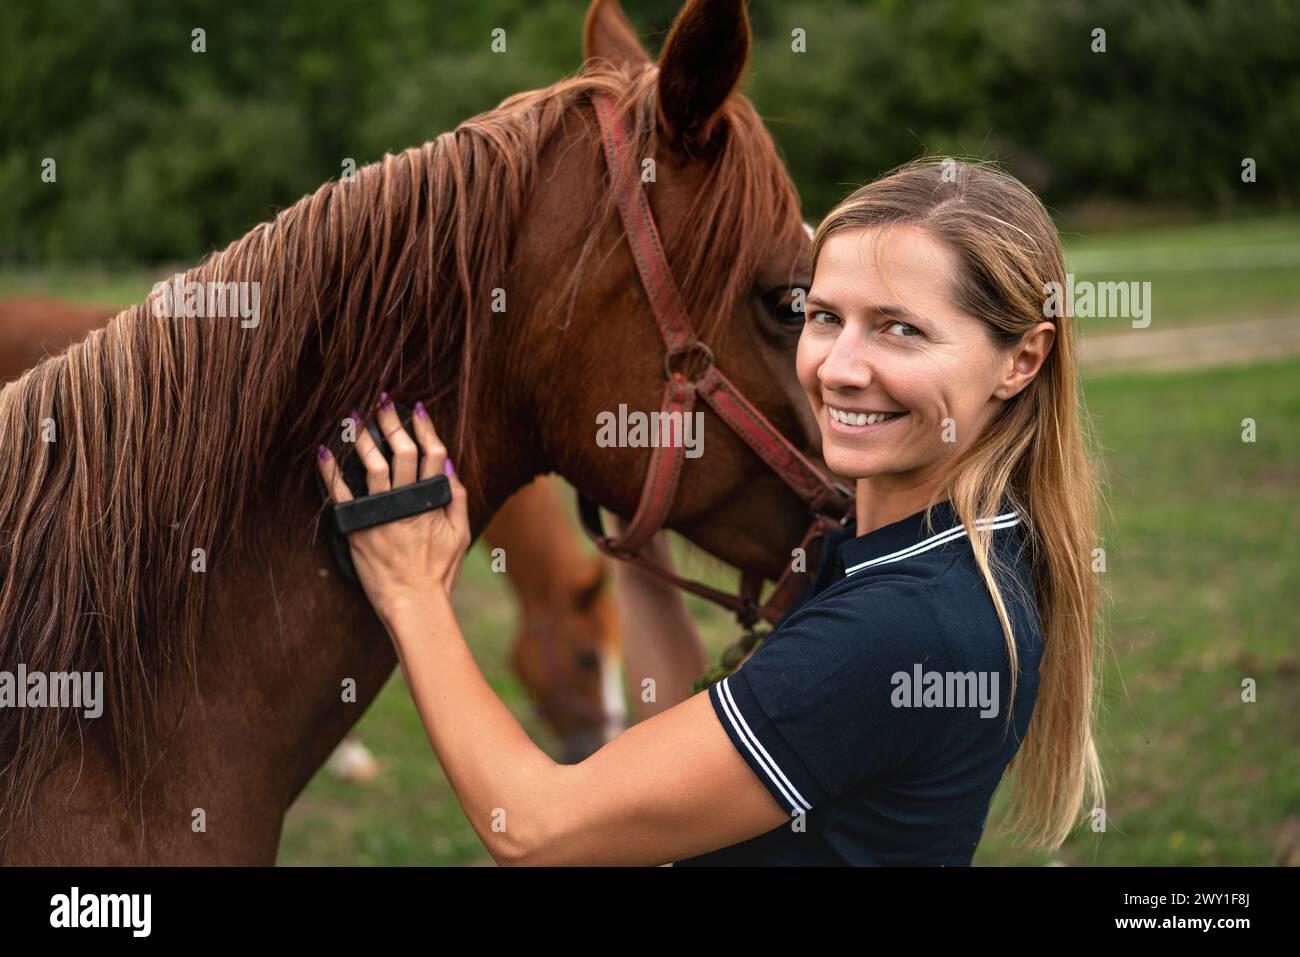 Junge Frau putzt braunes Pferd mit Bürste, den Kopf neben dem Tier Stockfoto